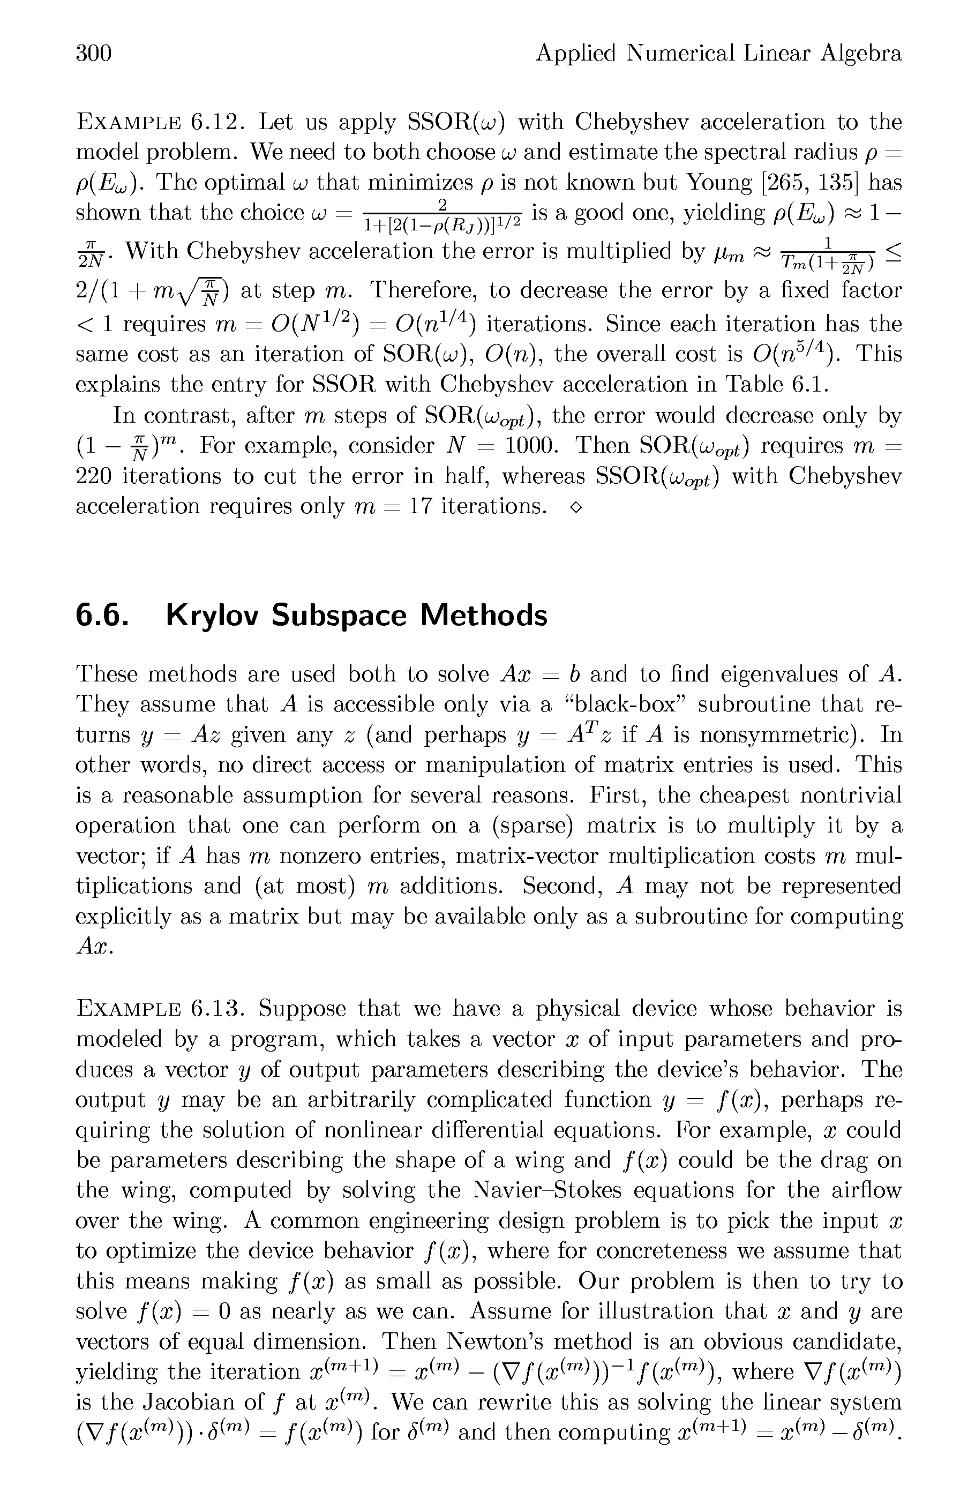 6.6 Krylov Subspace Methods